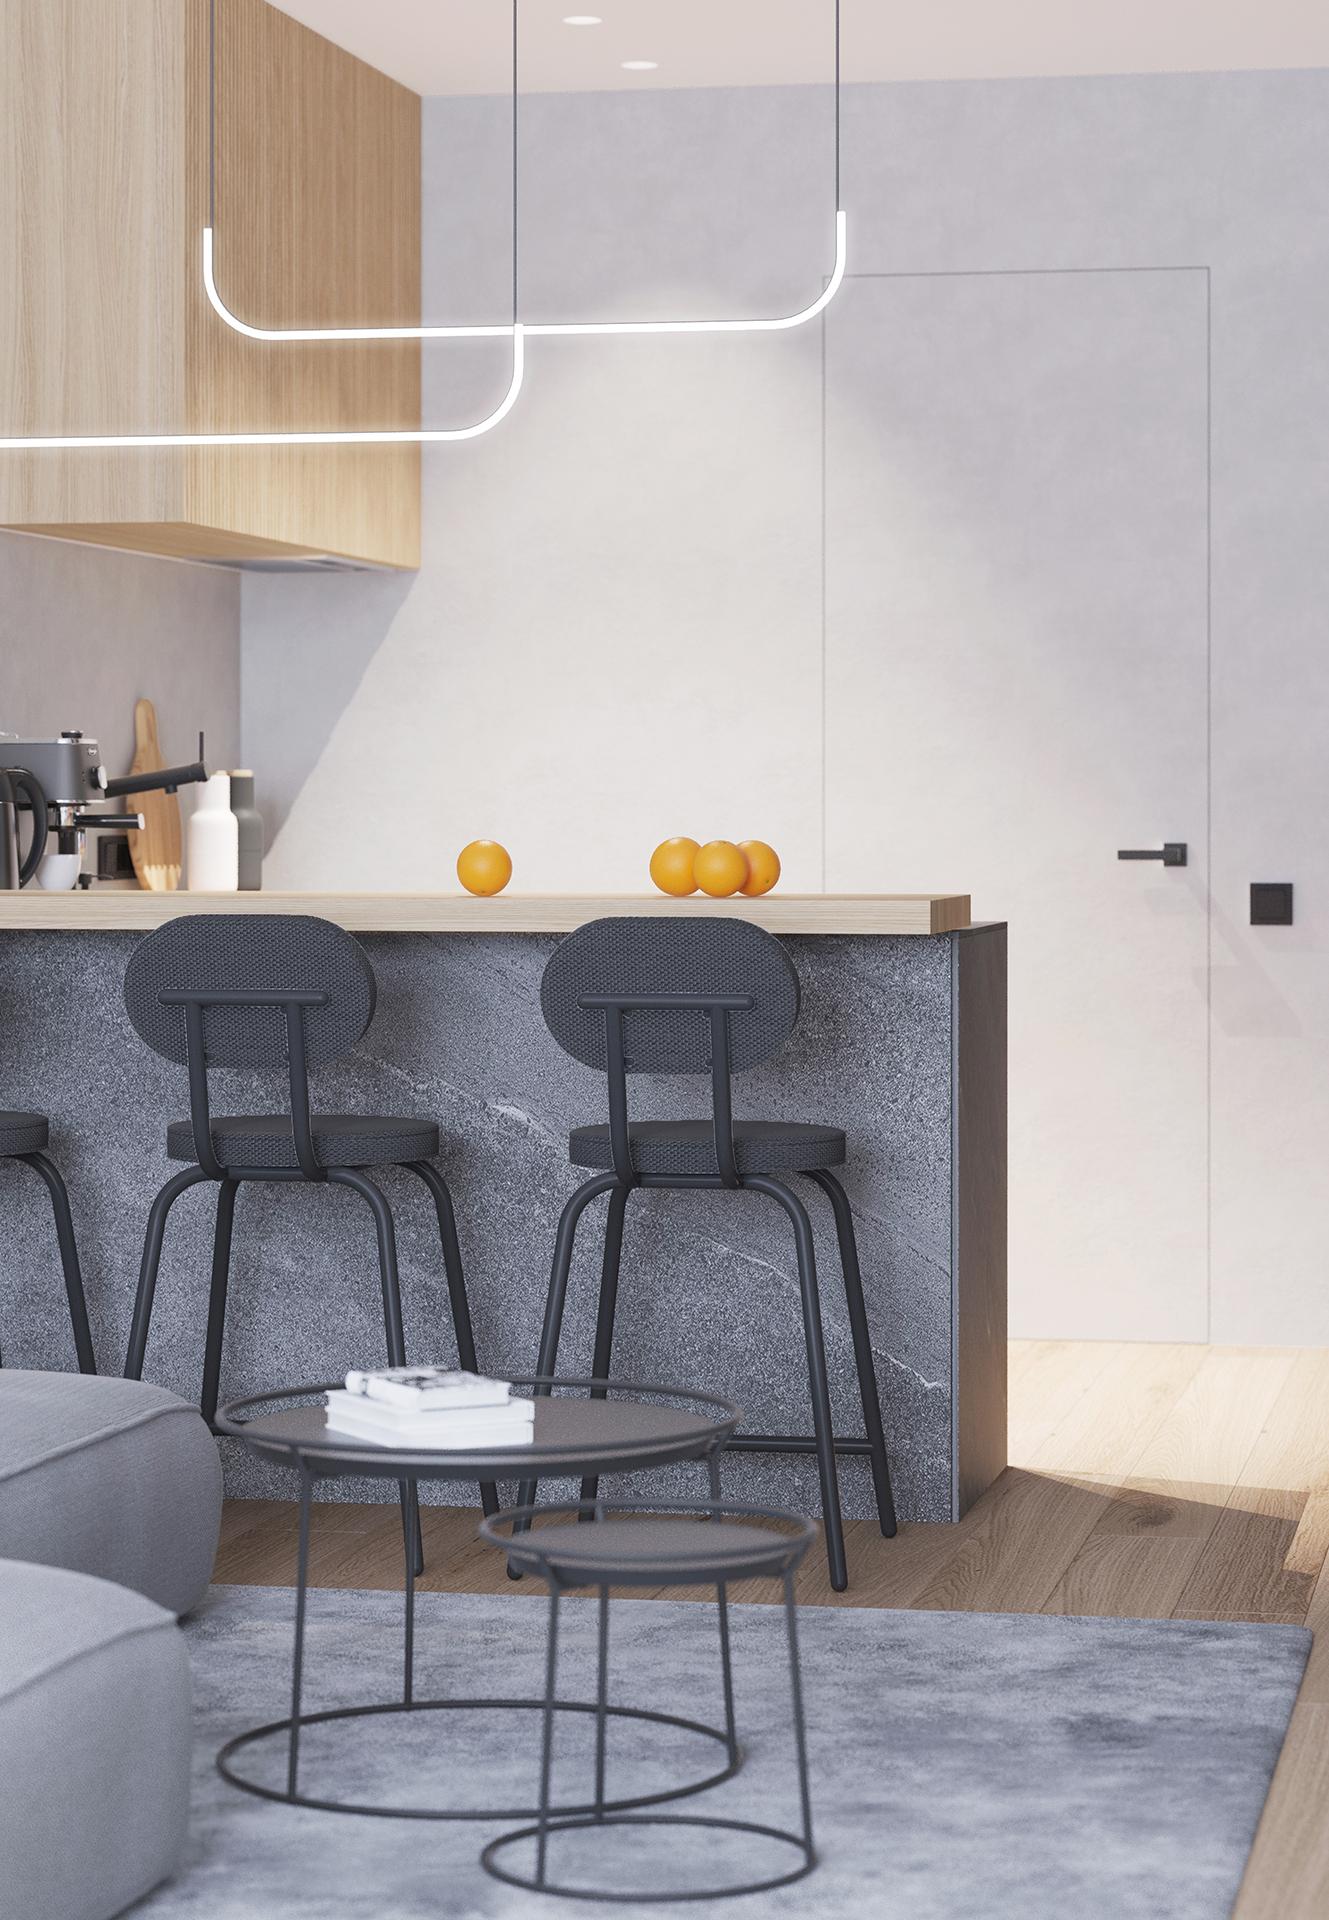 Интерьер кухни cветовыми линиями и подсветкой светодиодной в стиле лофт